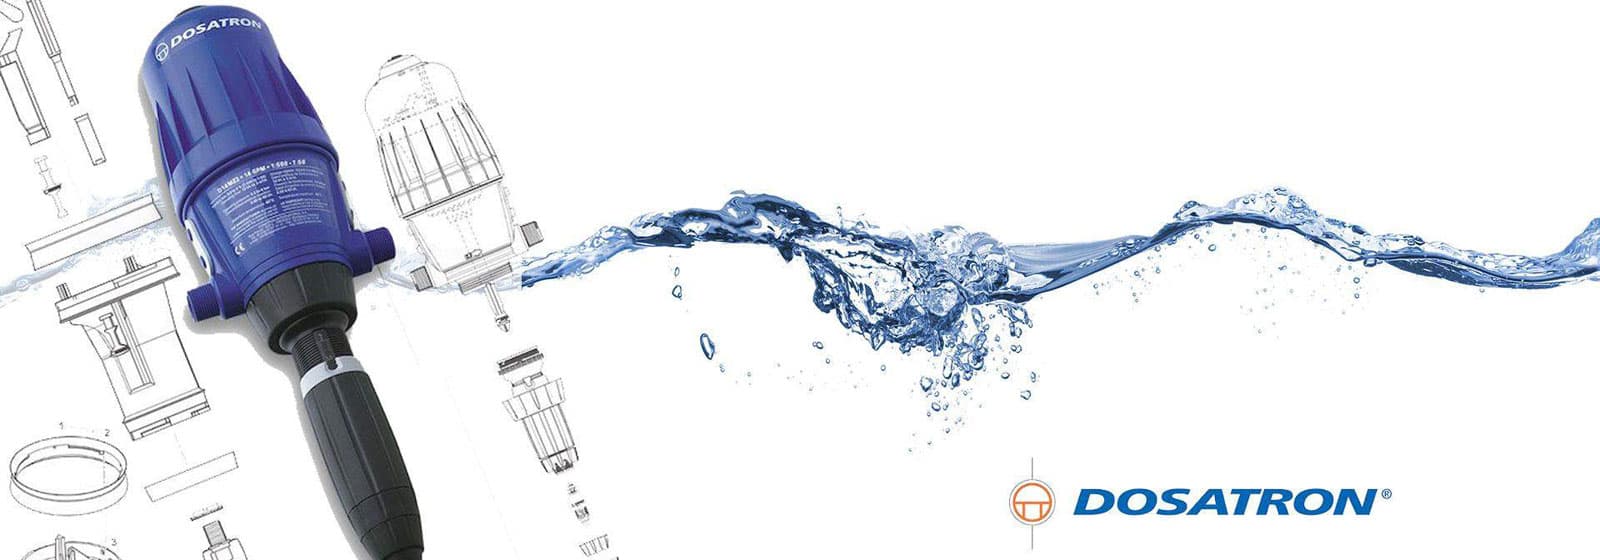 Su ile kimyasalları<br/> elektriksiz buluşturan teknoloji